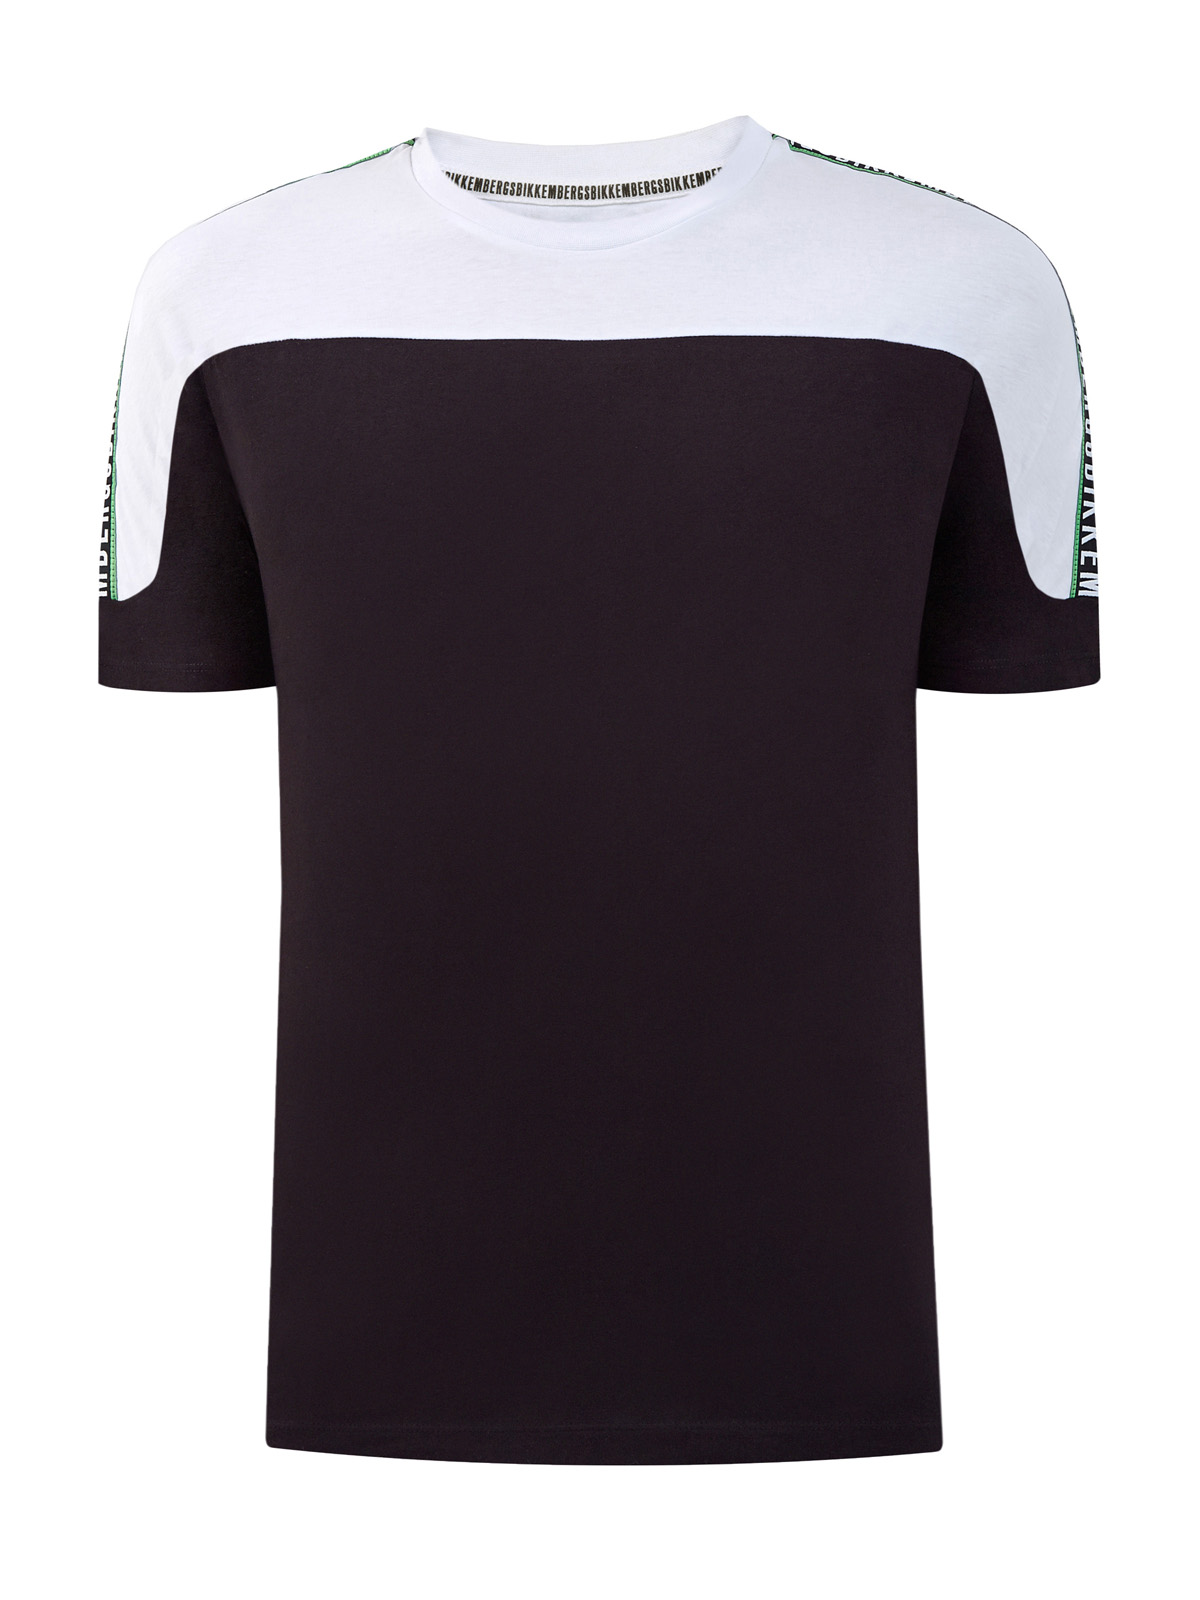 Хлопковая футболка в стиле colorblock с лентой-аппликацией BIKKEMBERGS, цвет черно-белый, размер S;M;L;XL;2XL;3XL - фото 1